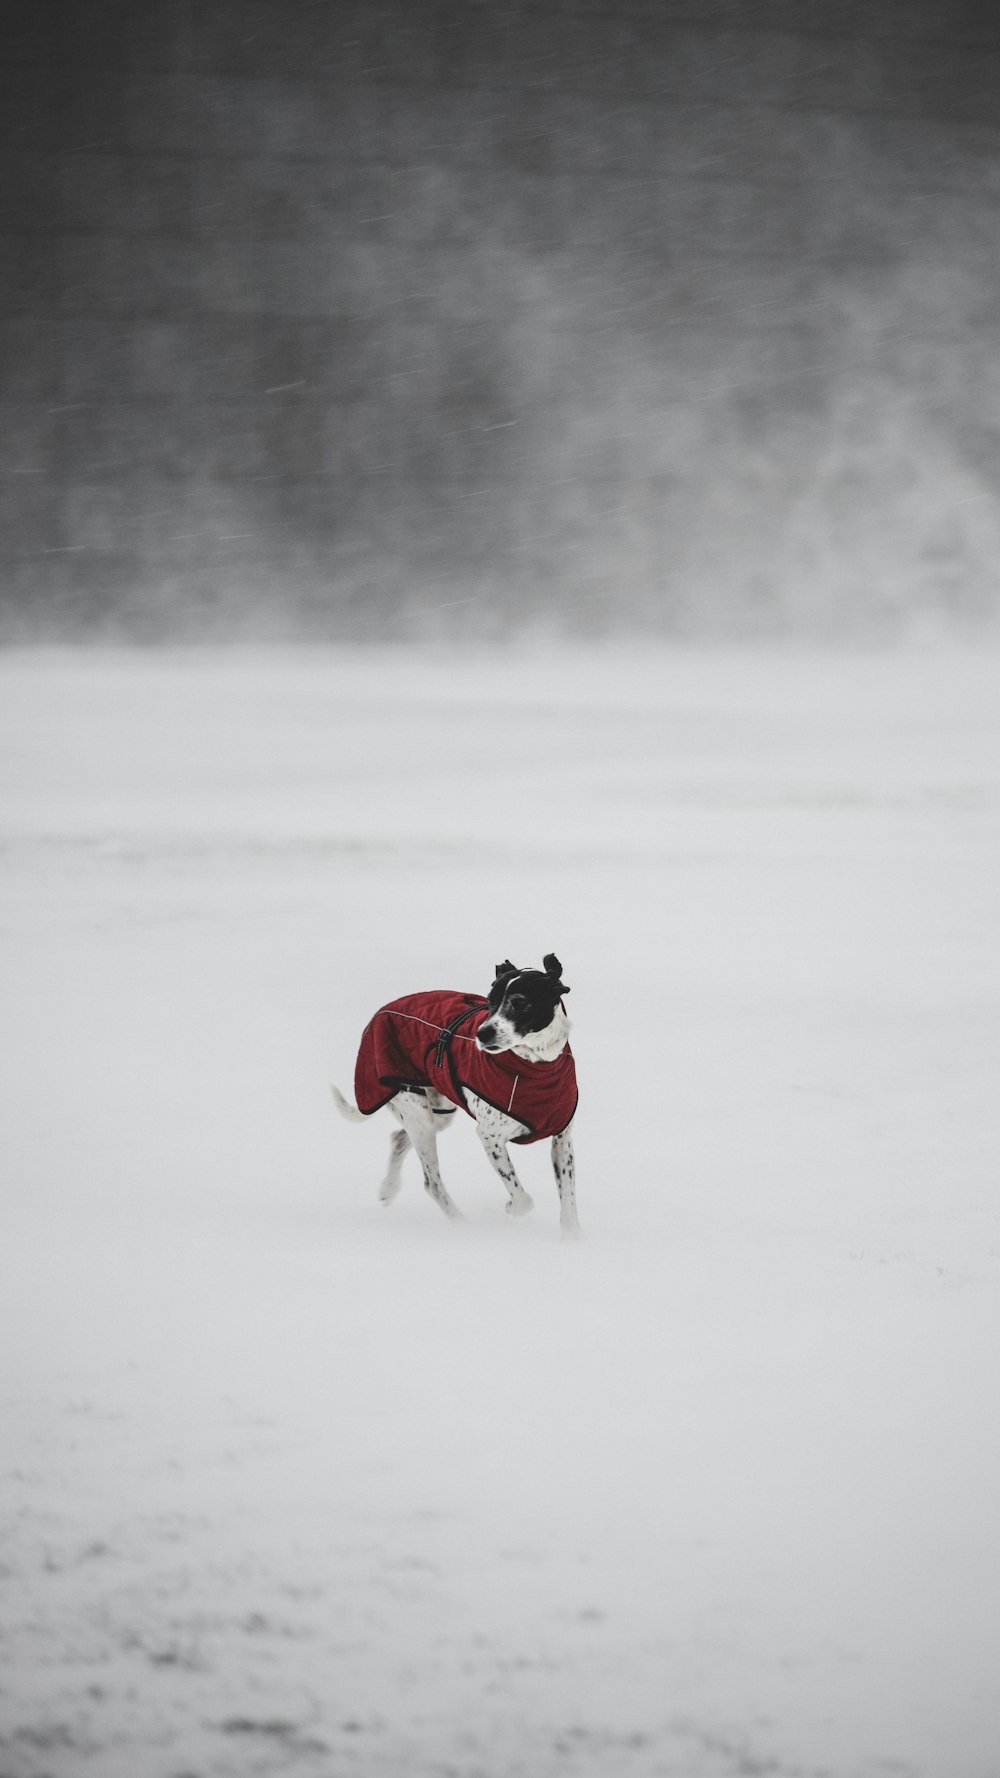 분홍색 재킷과 흰색 바지를 입은 여자가 눈 위에 흑백 짧은 코트 개를 들고 있다